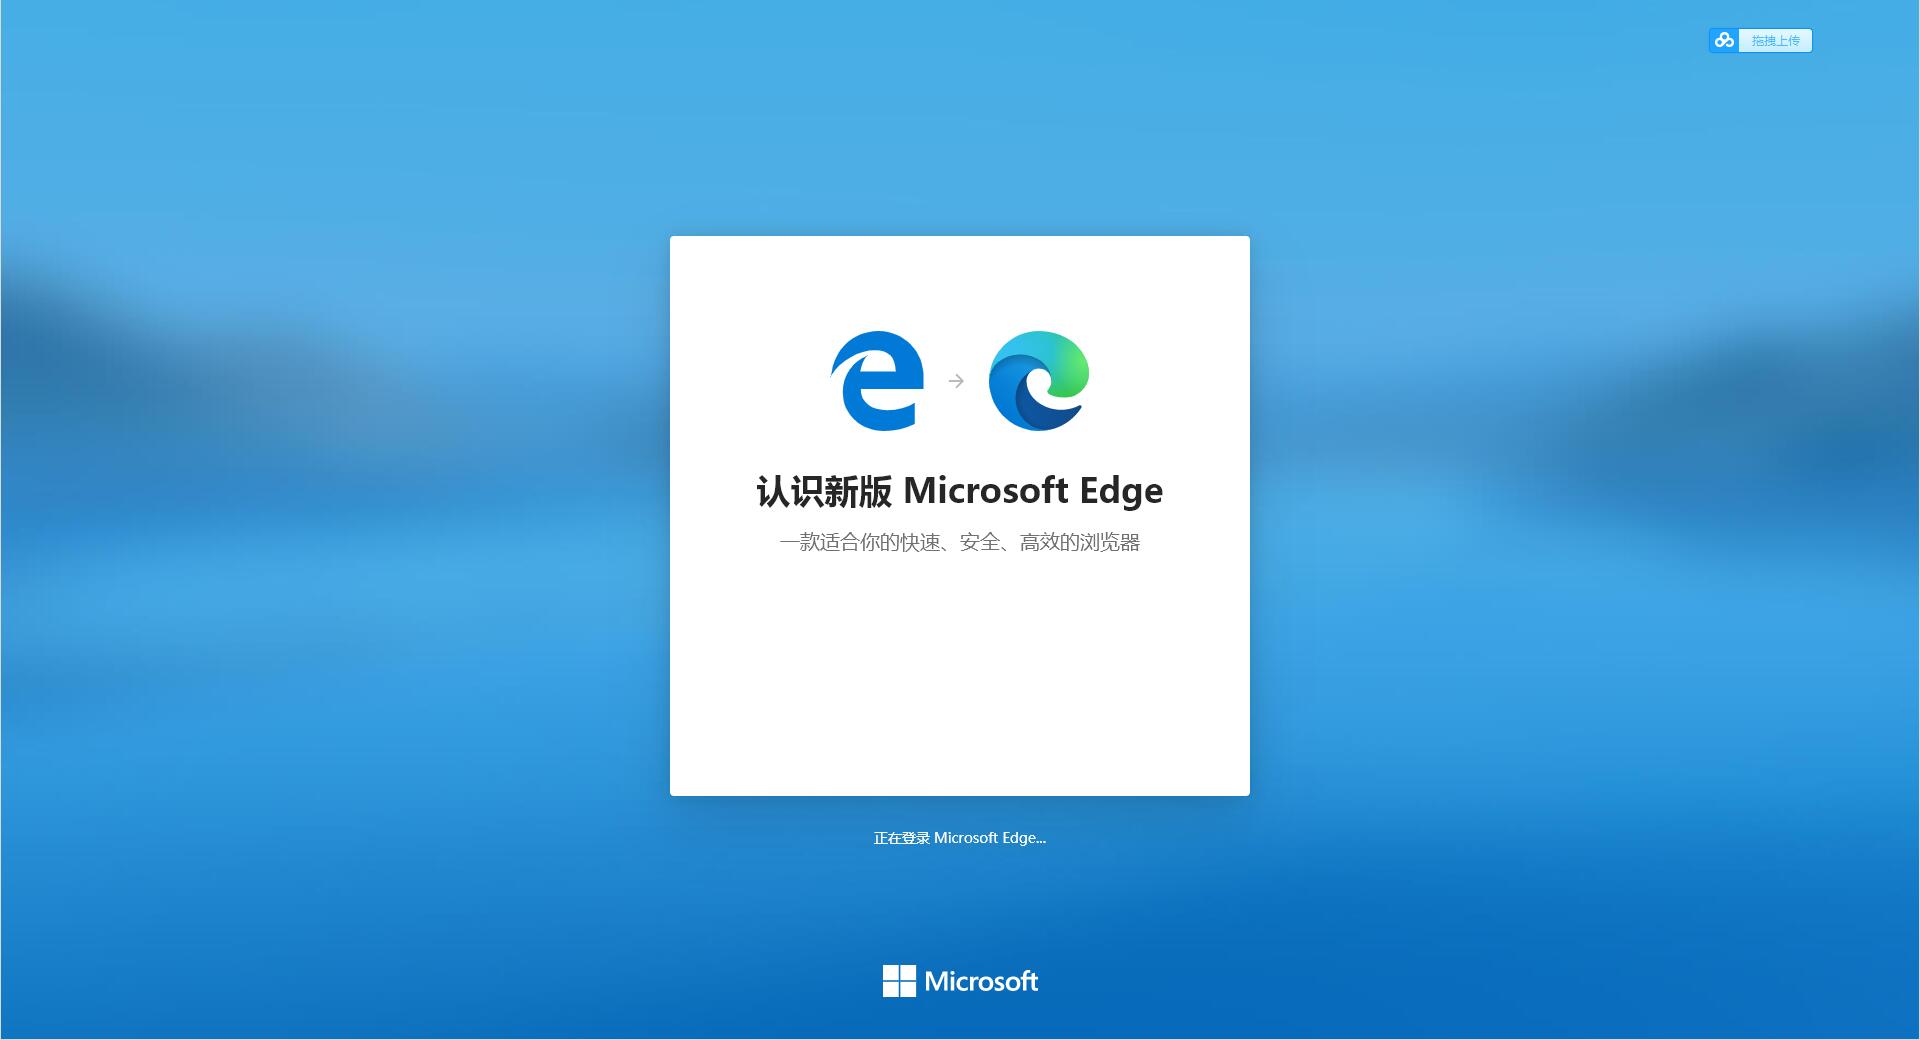 Microsoft Edge 64位�x�安�b包107.0.1418.26官方正式版截�D0